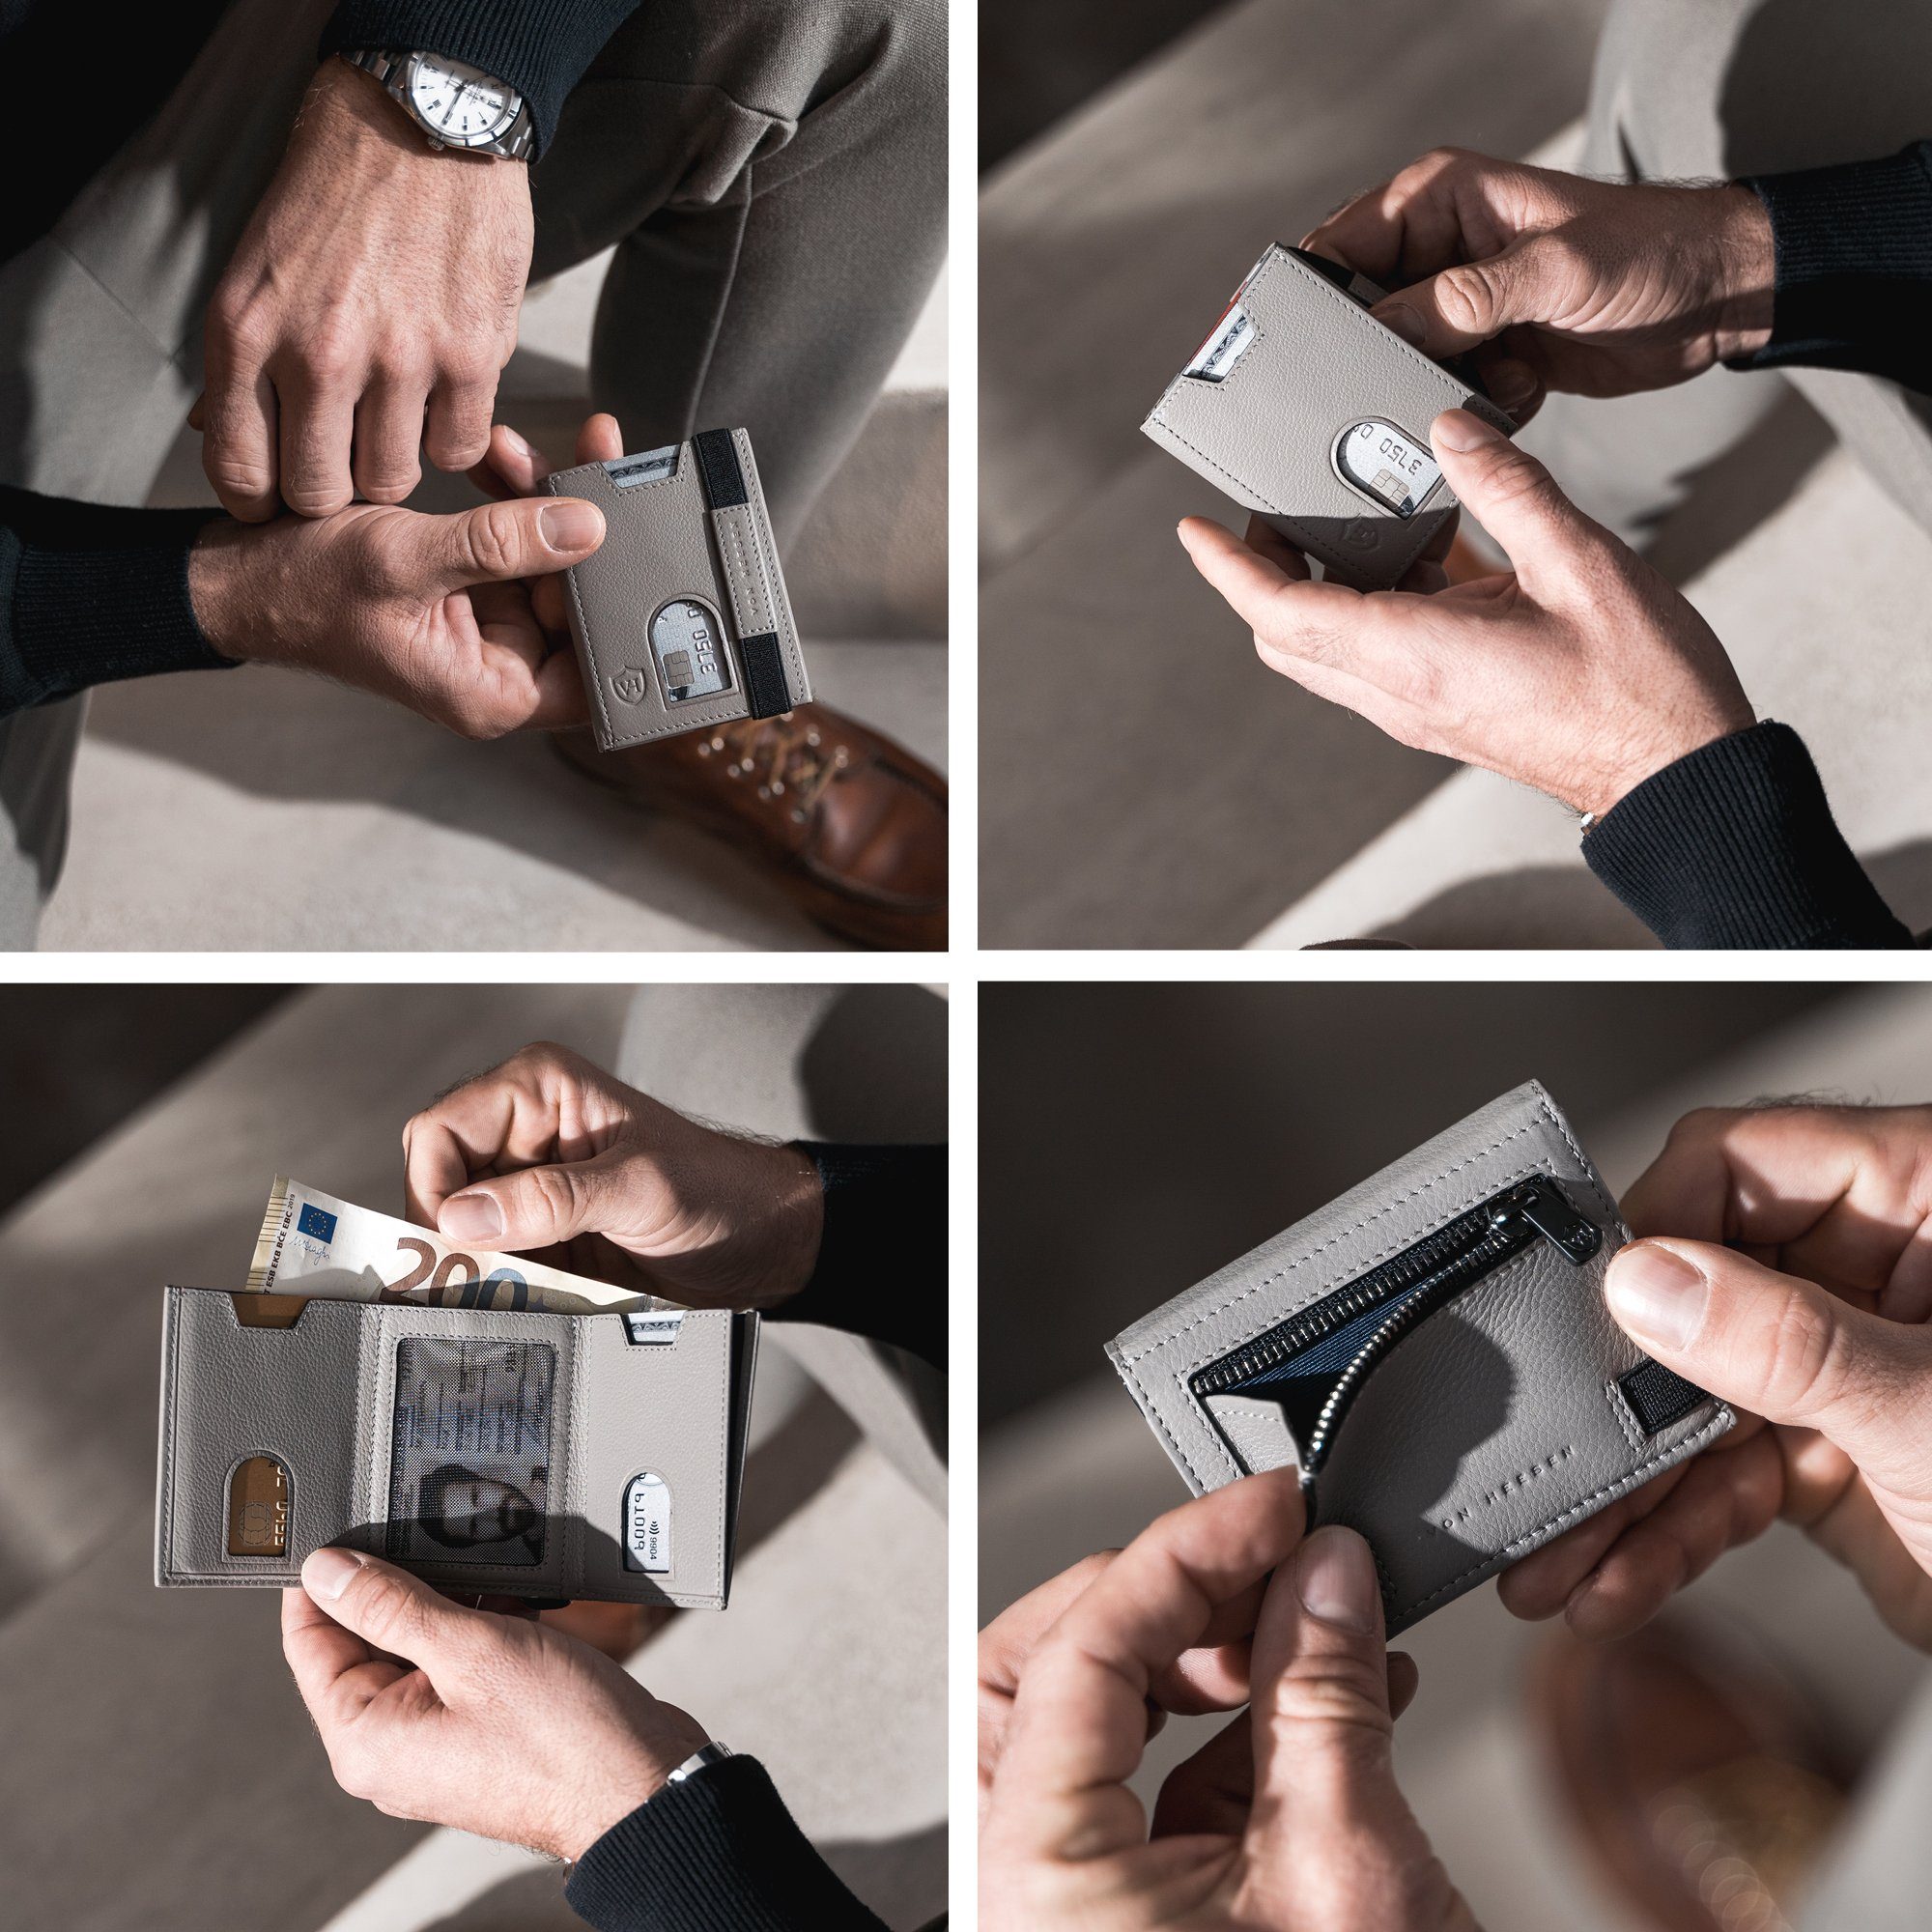 Geldbörse Slim & RFID-Schutz Wallet Portemonnaie inkl. Kartenfächer Grau Whizz mit Mini-Münzfach, Wallet VON & Geschenkbox HEESEN Geldbeutel 5